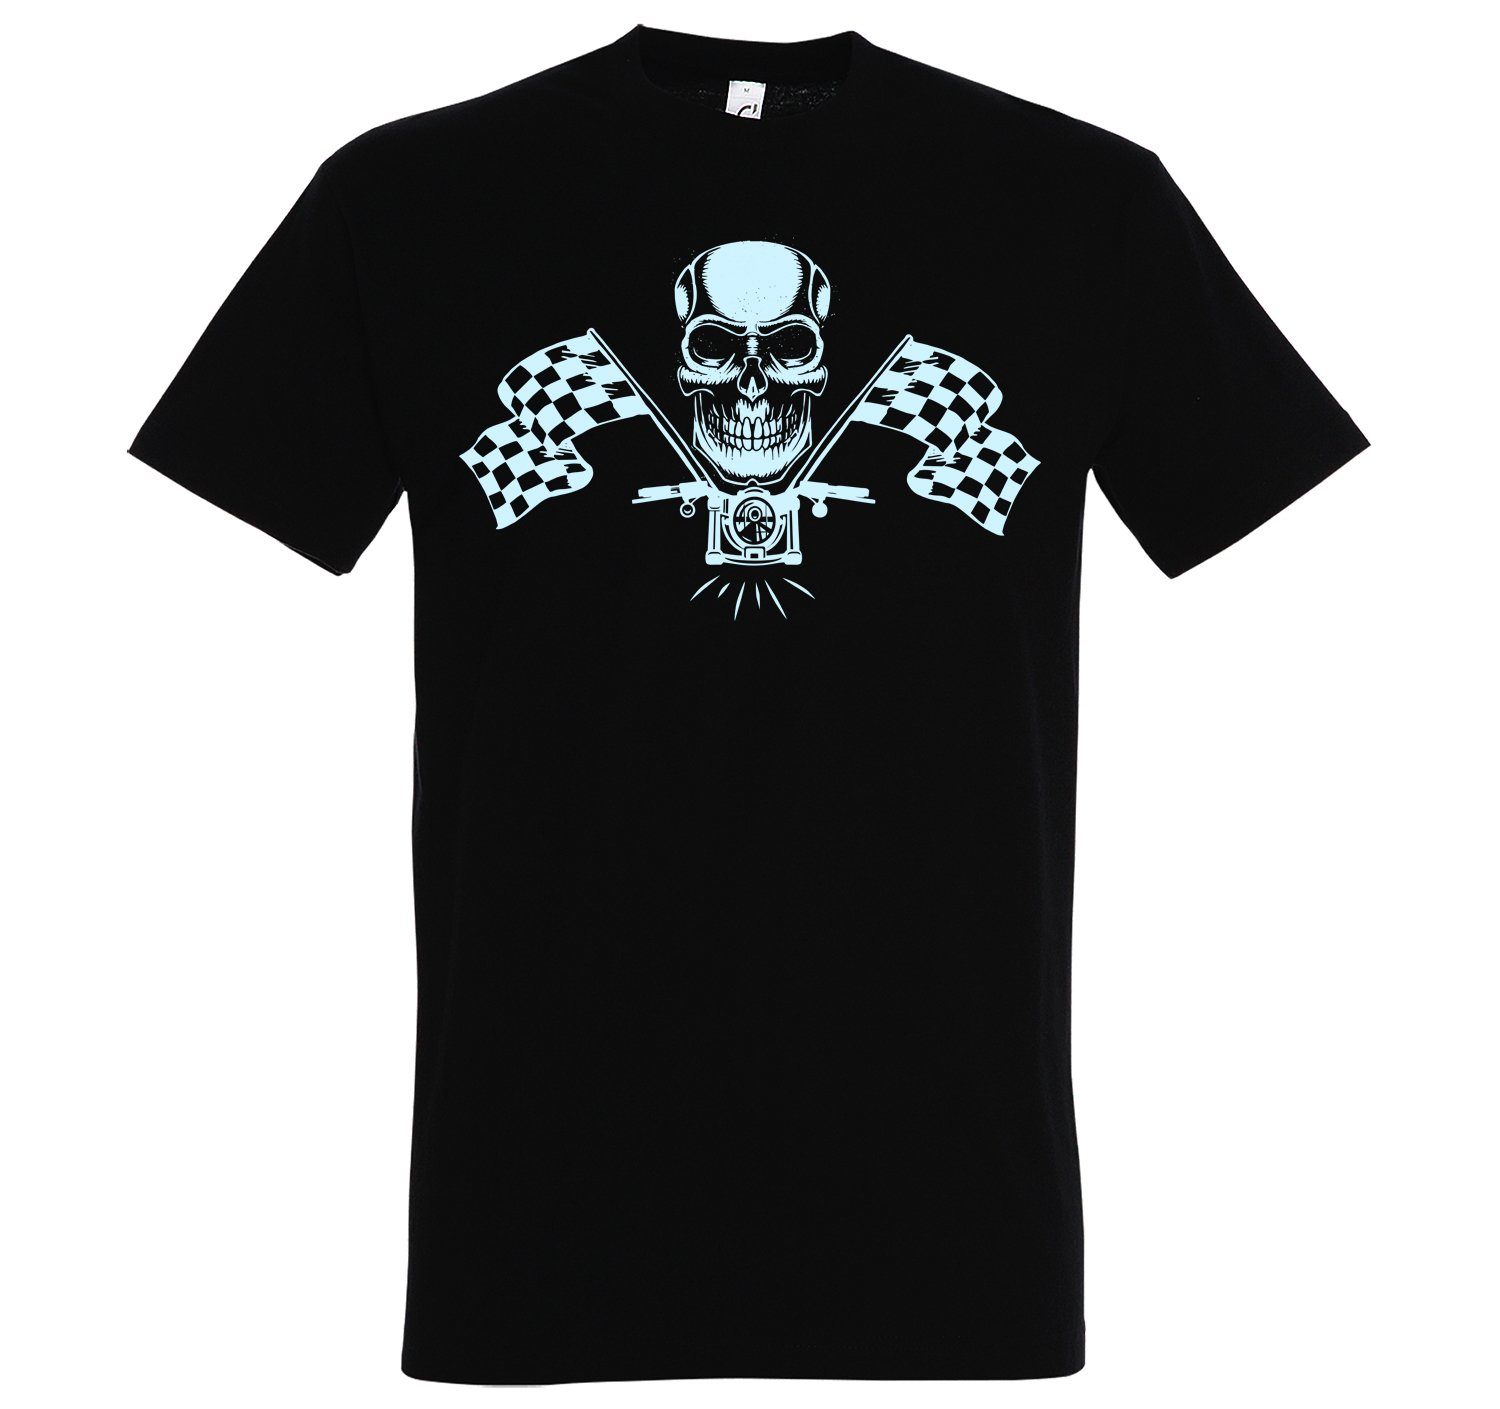 Online-Großhandelspreise Youth Designz T-Shirt MotorradSkull Herren T-Shirt Schwarz